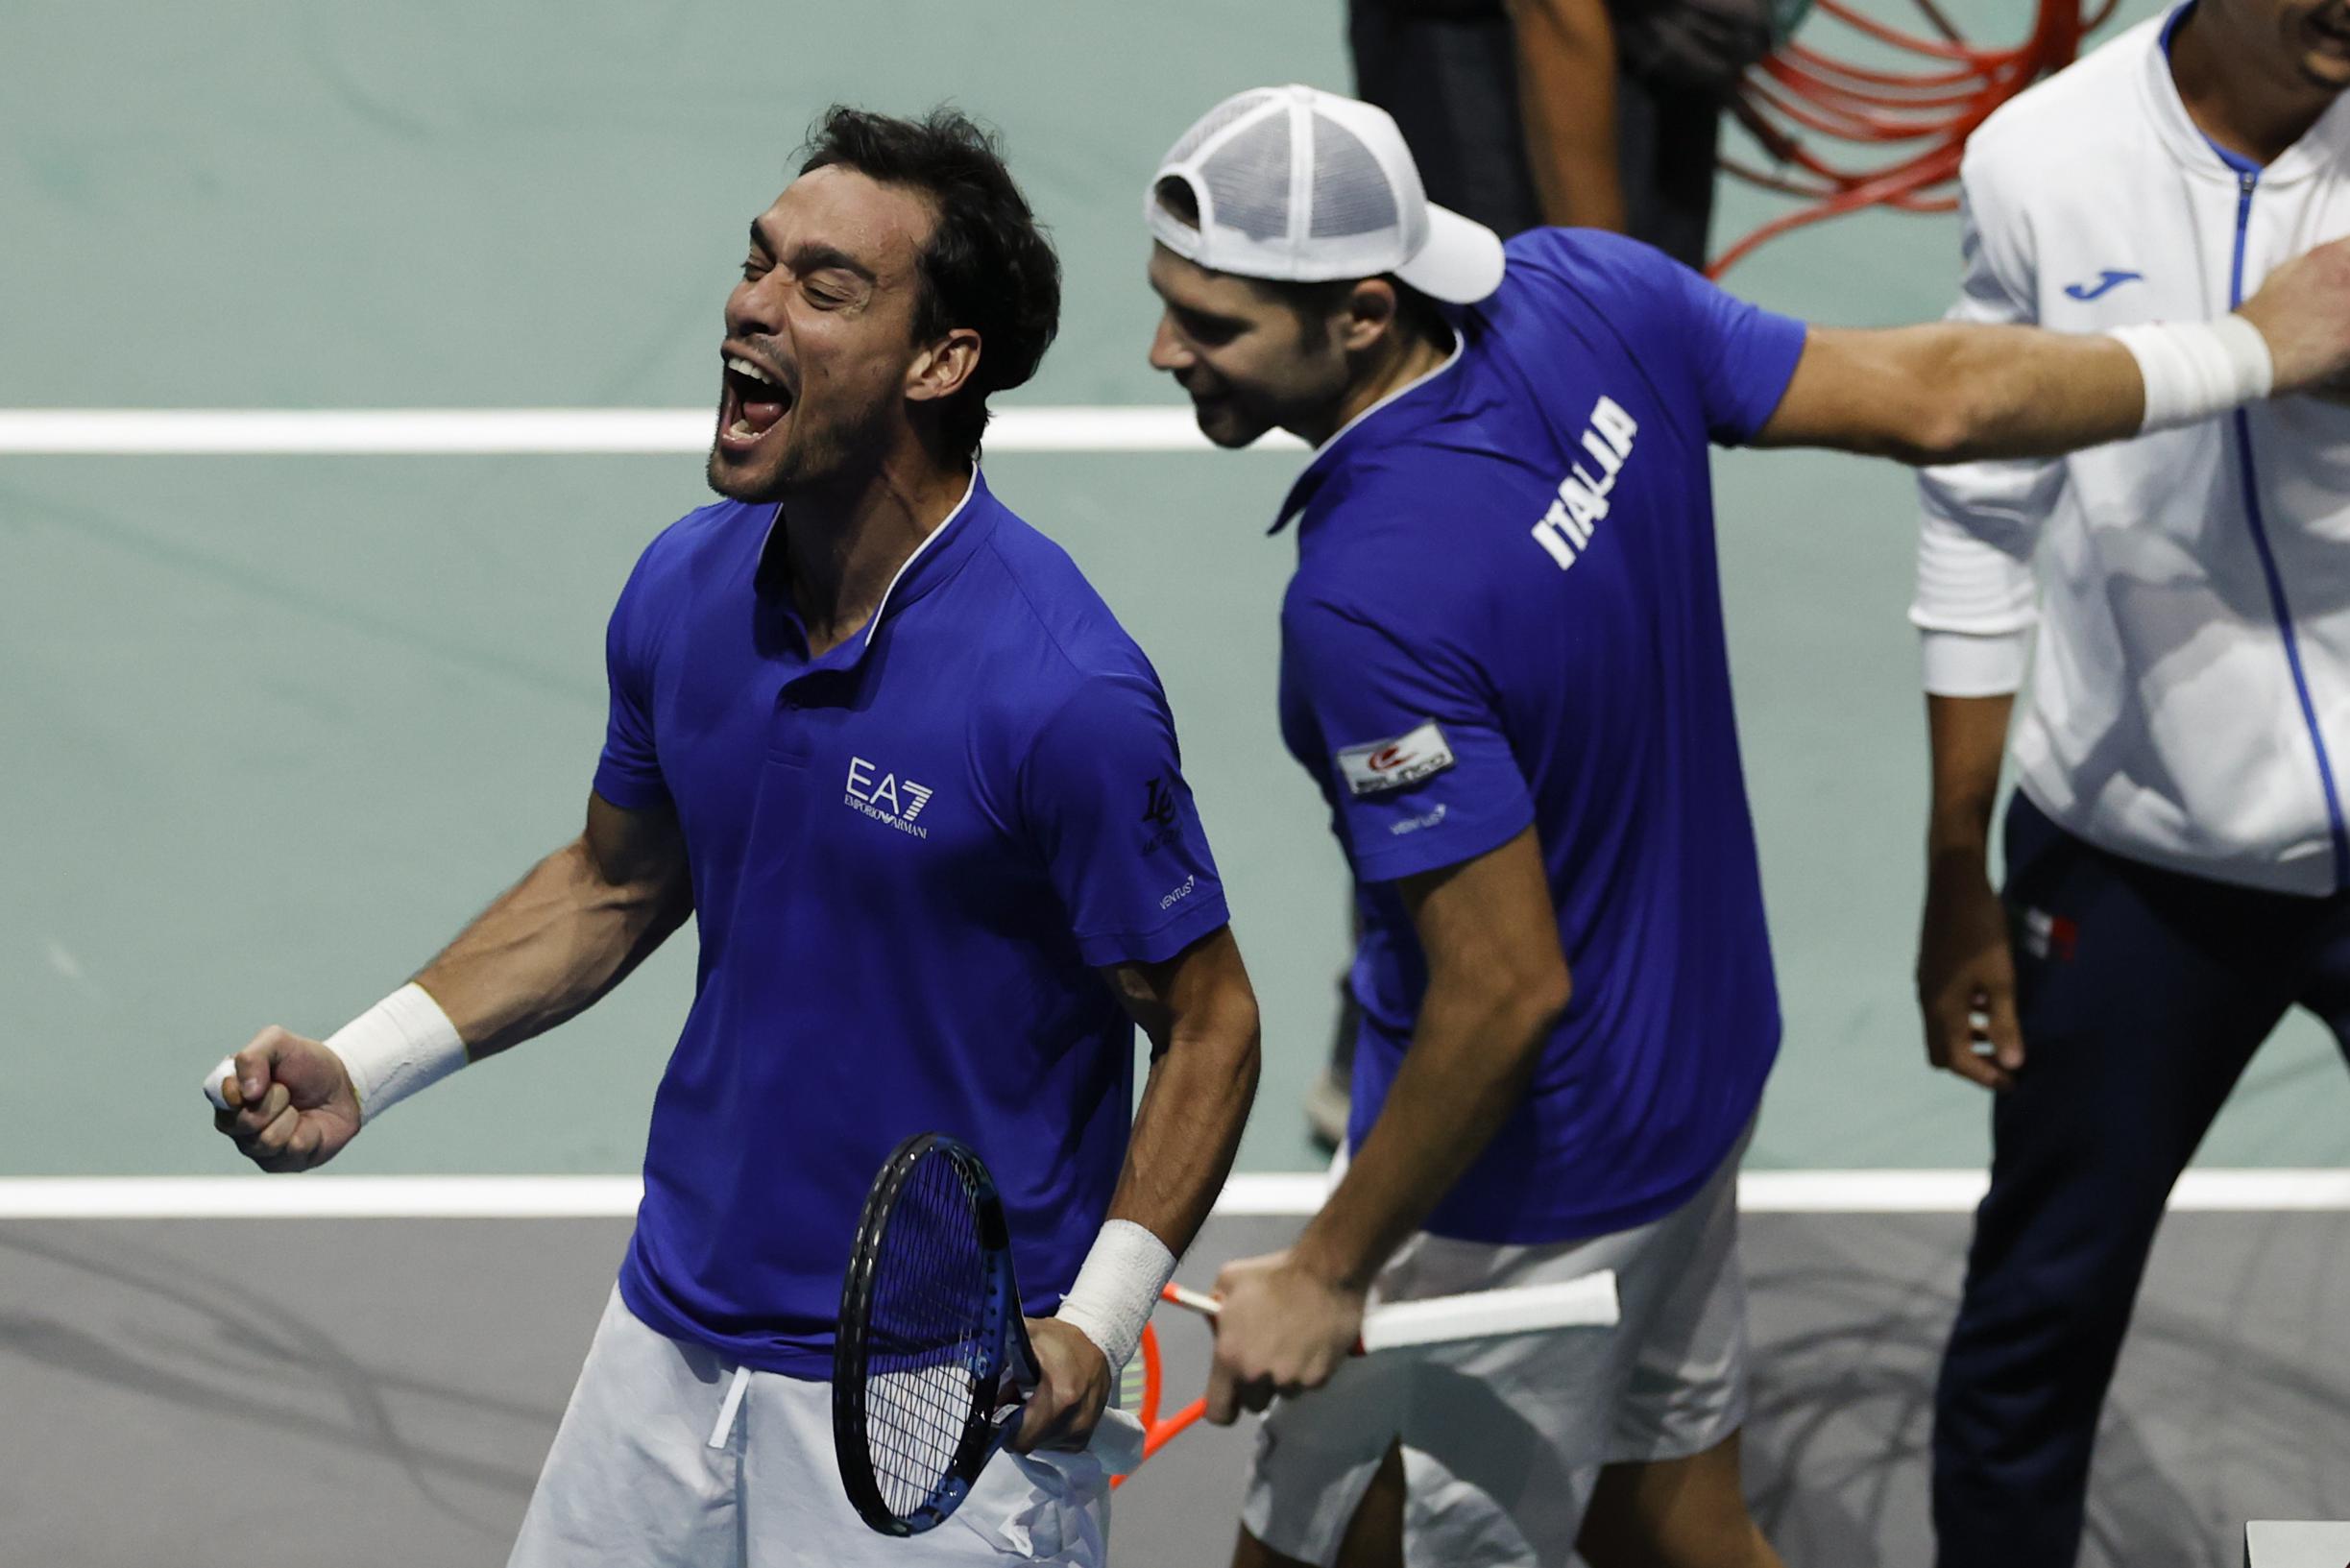 Italianen plaatsen zich ten koste van VS voor halve finales van de Davis Cup